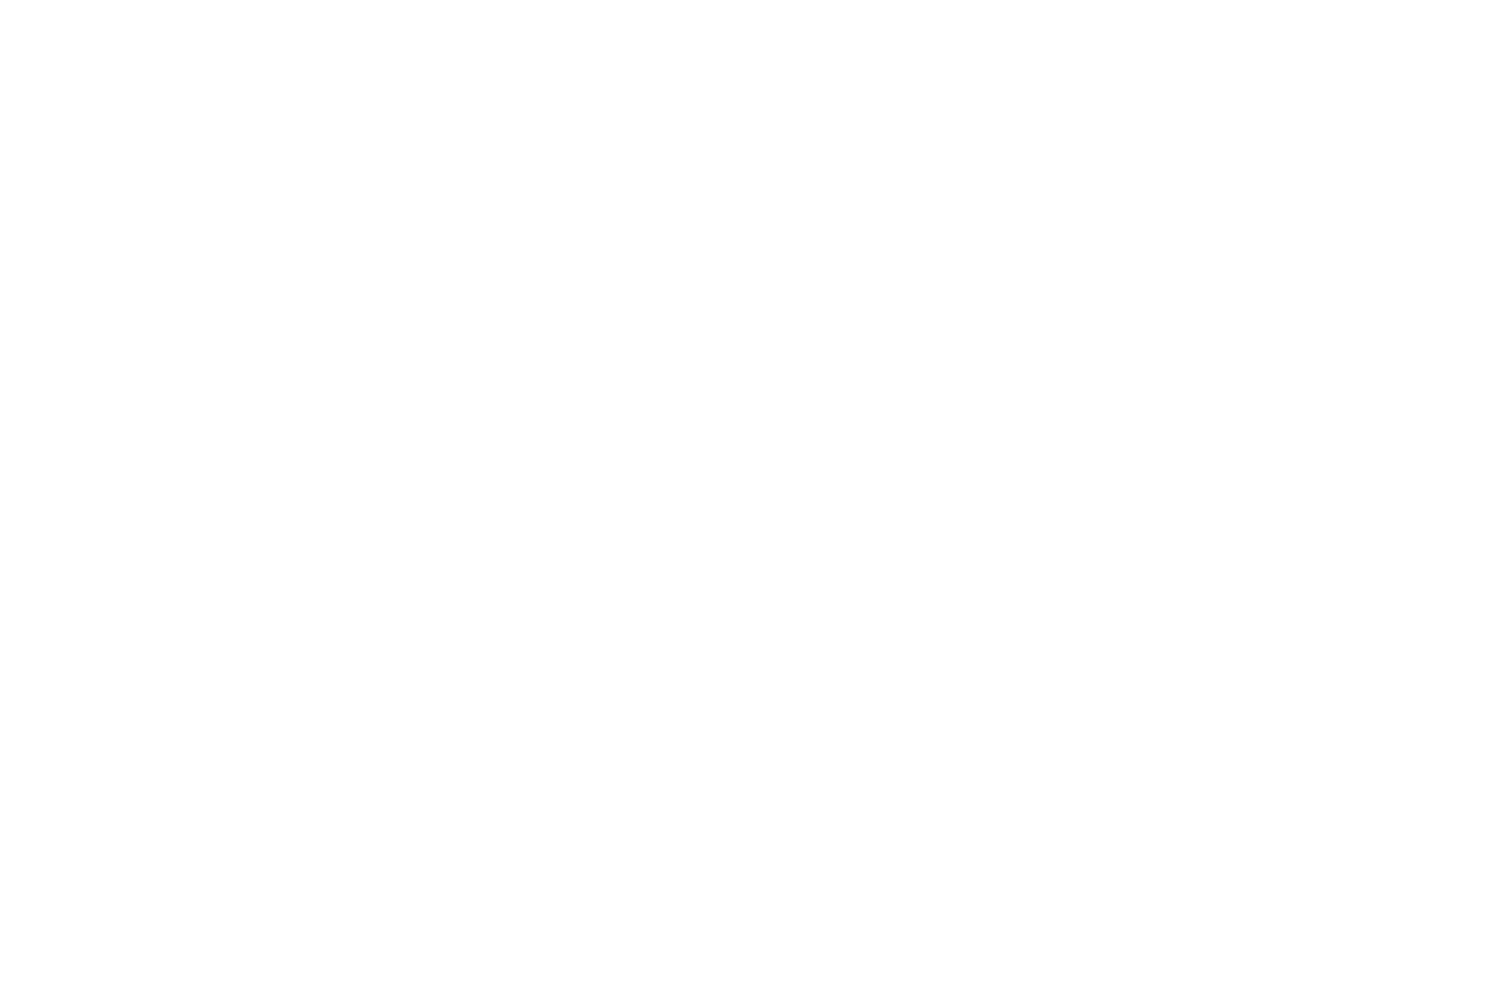 SHORT ROUND